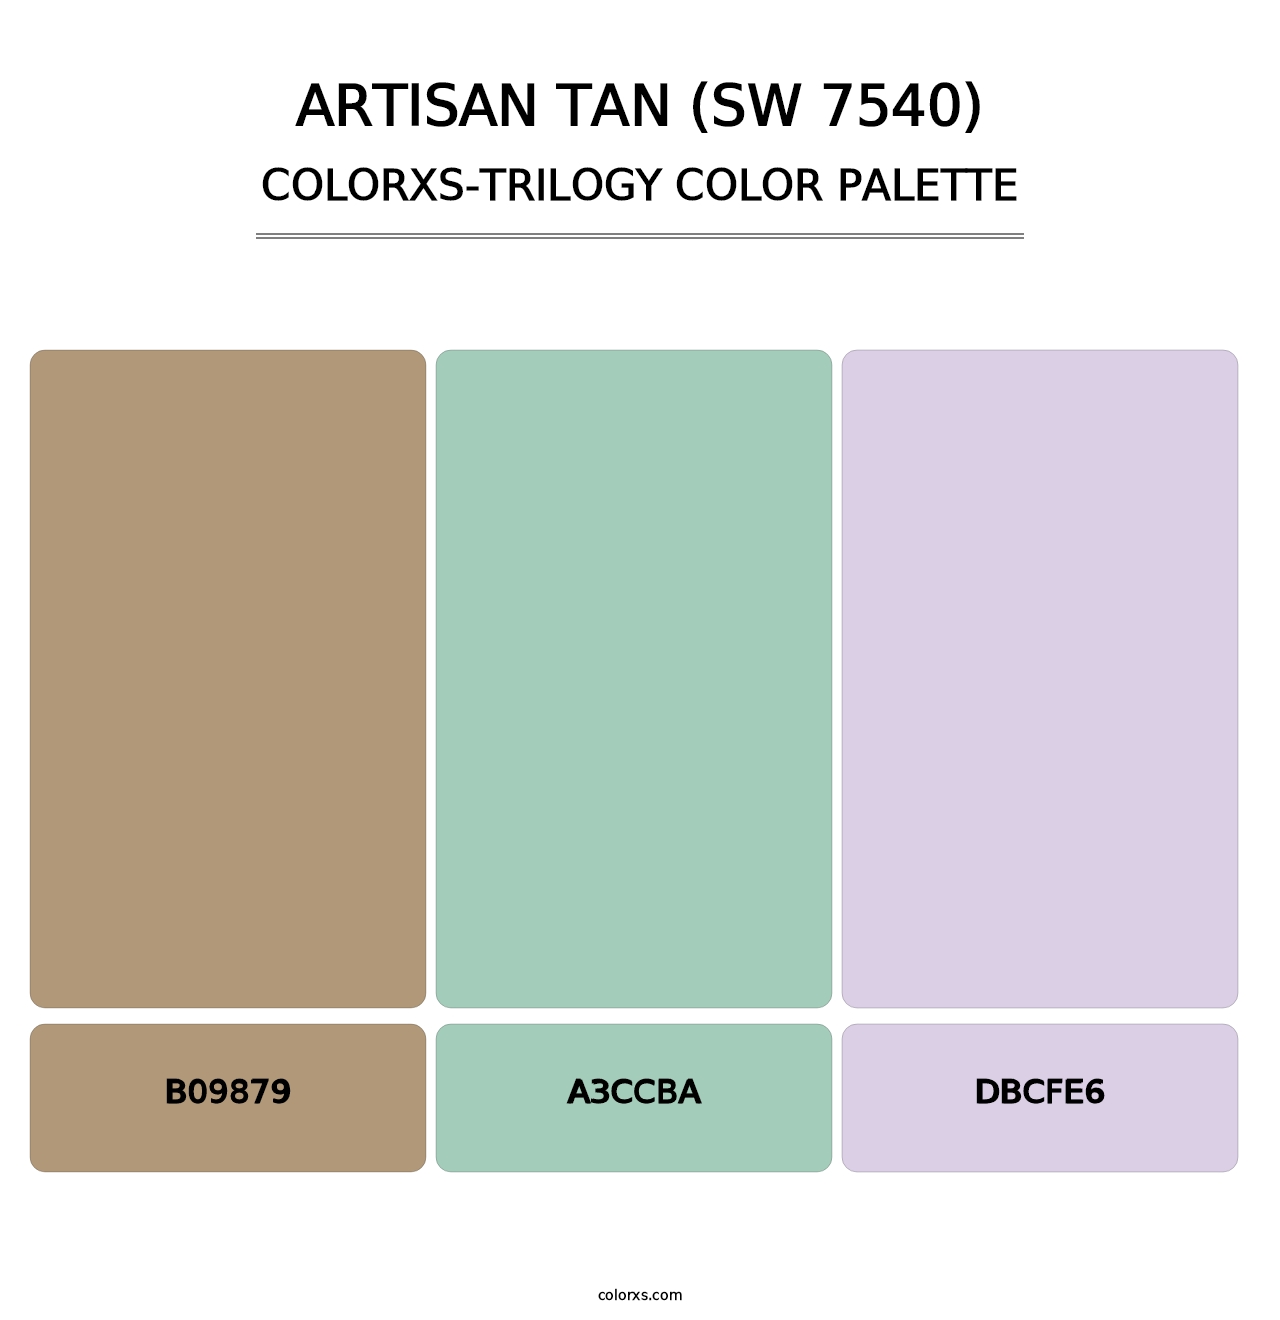 Artisan Tan (SW 7540) - Colorxs Trilogy Palette